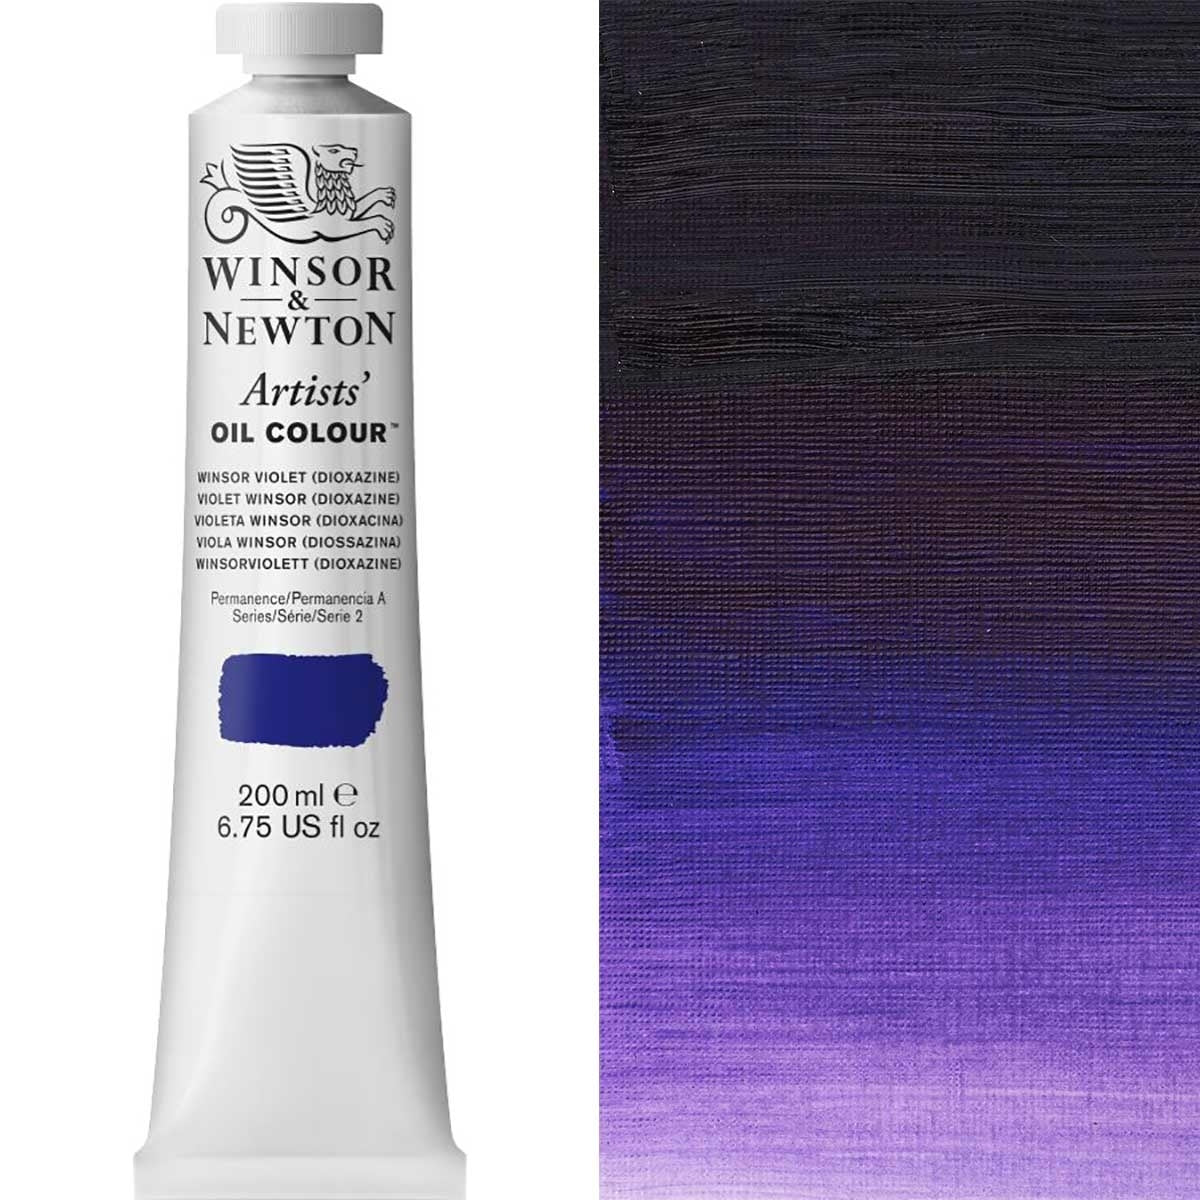 Winsor et Newton - Couleur d'huile des artistes - 200 ml - Dioxazine violet Winsor